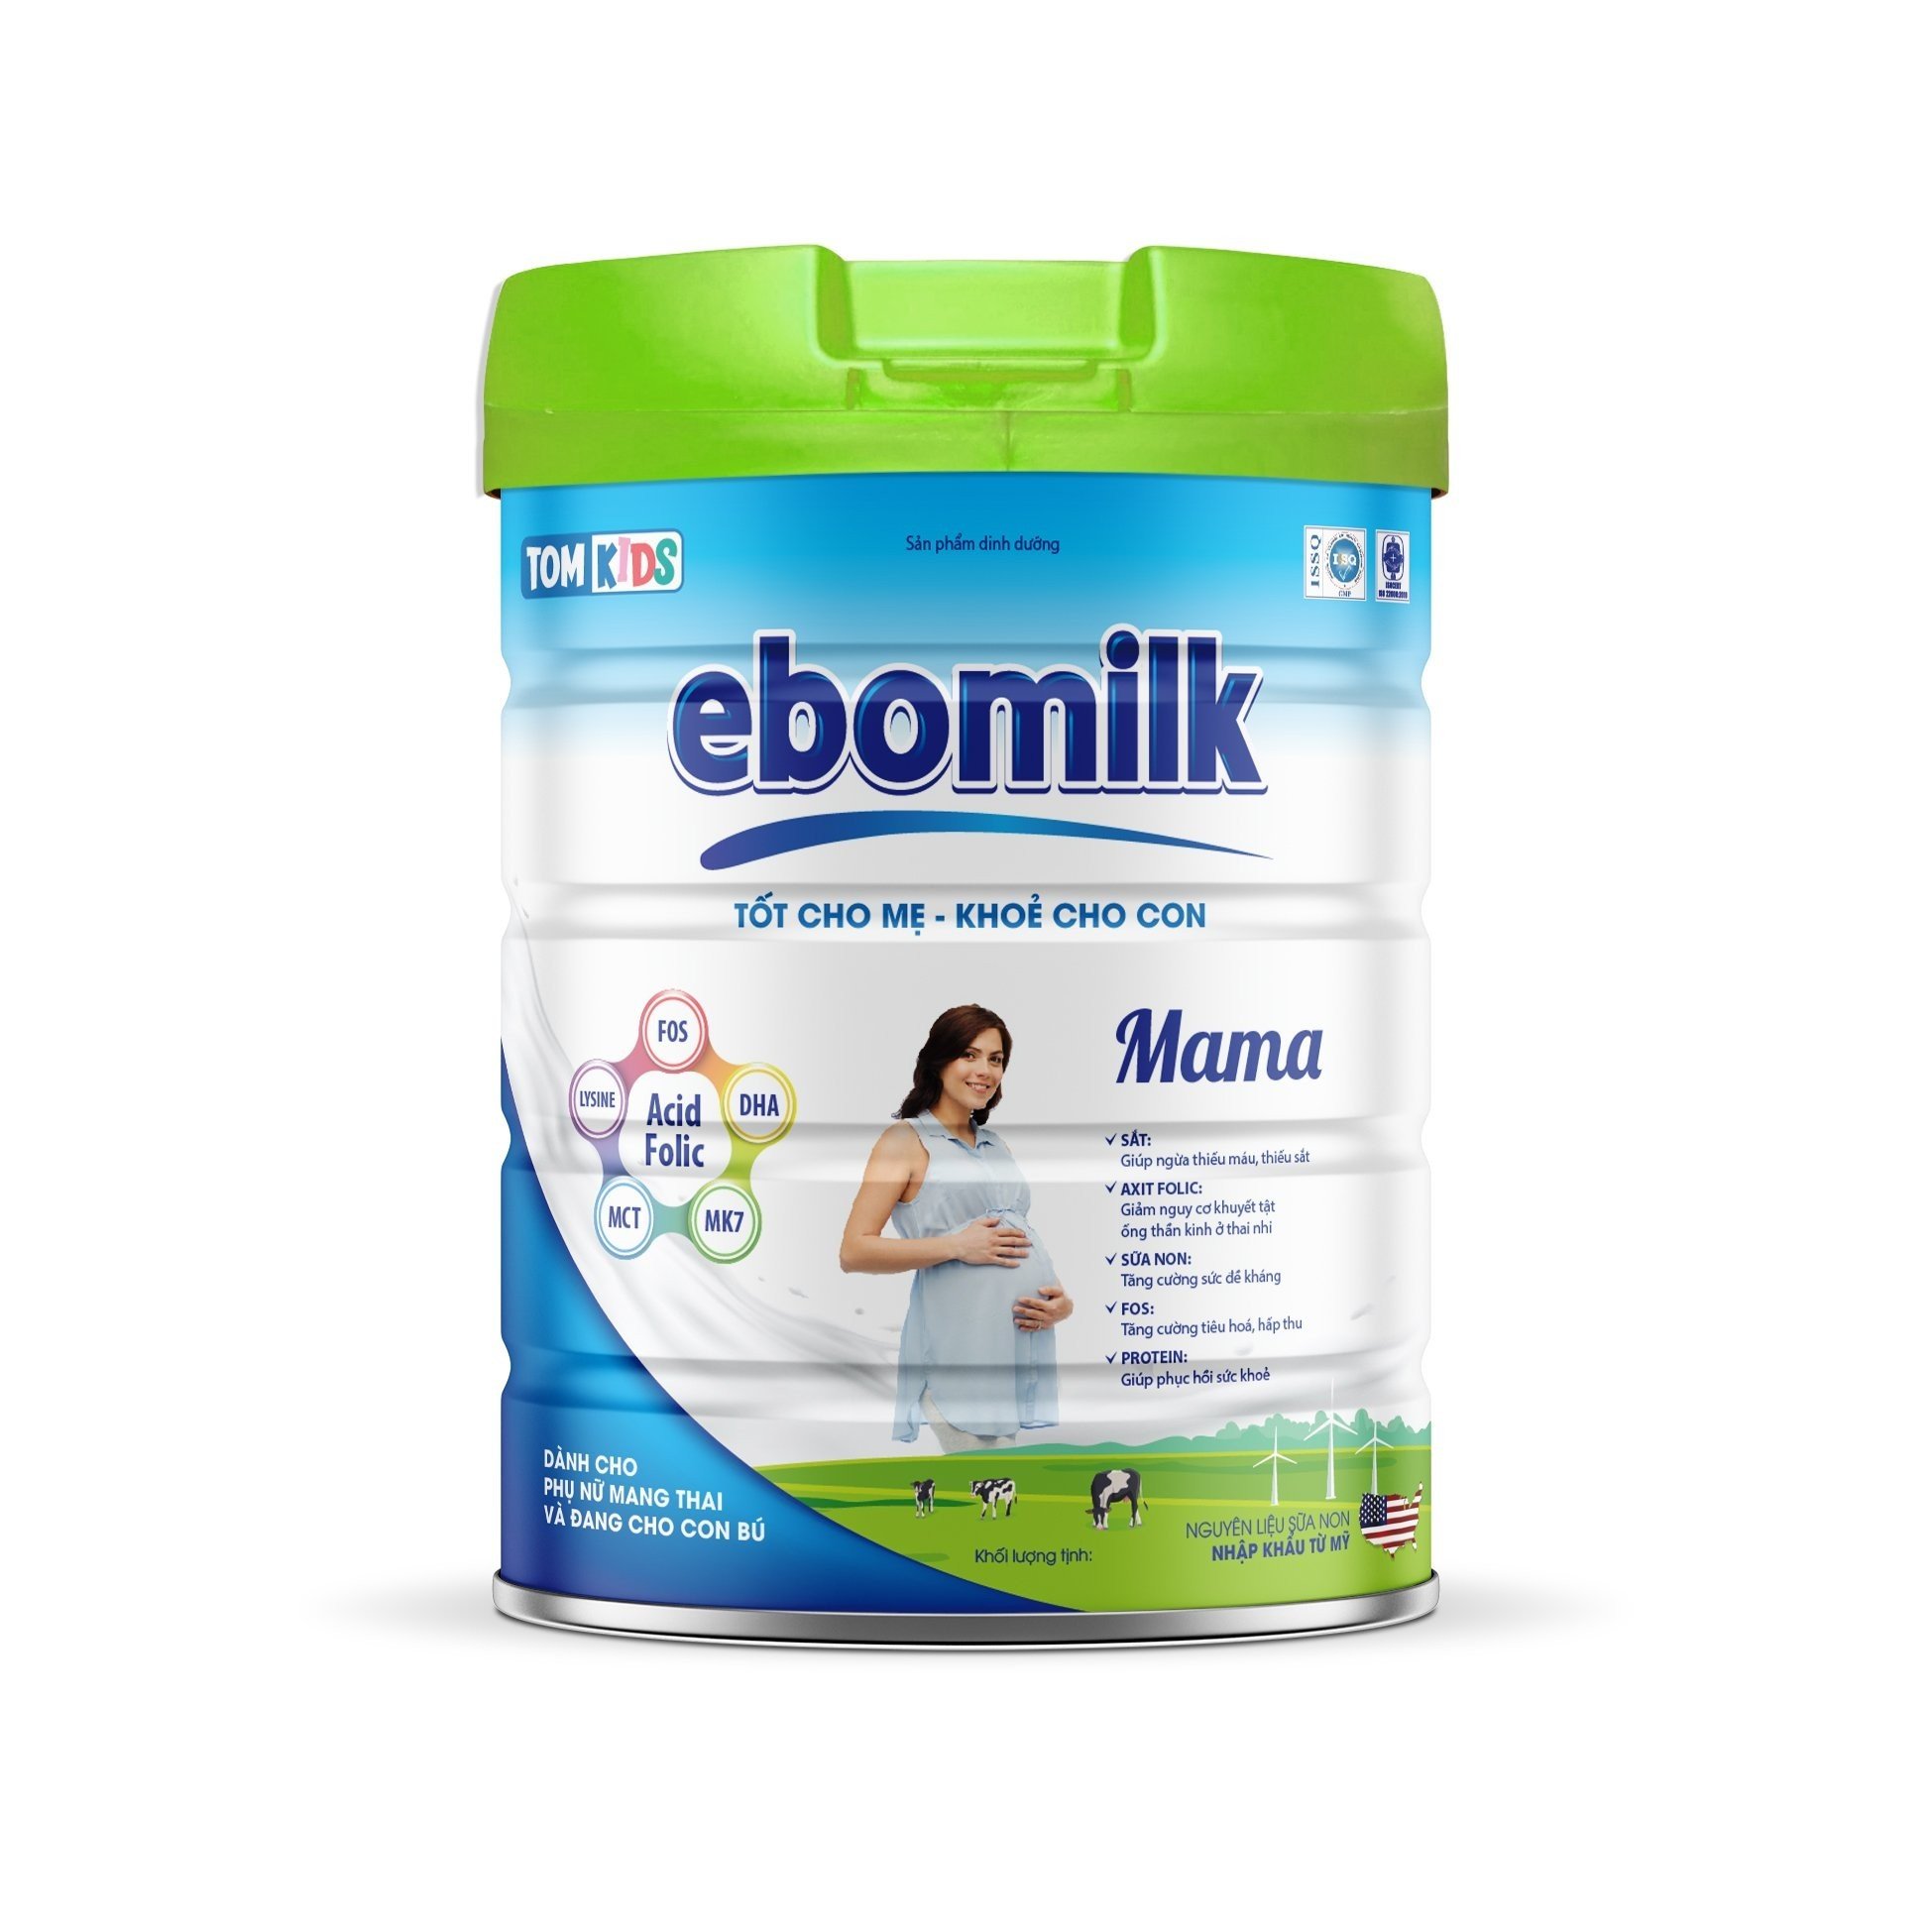 Sữa Ebomilk có an toàn và tốt như lời đồn hay không? - 3